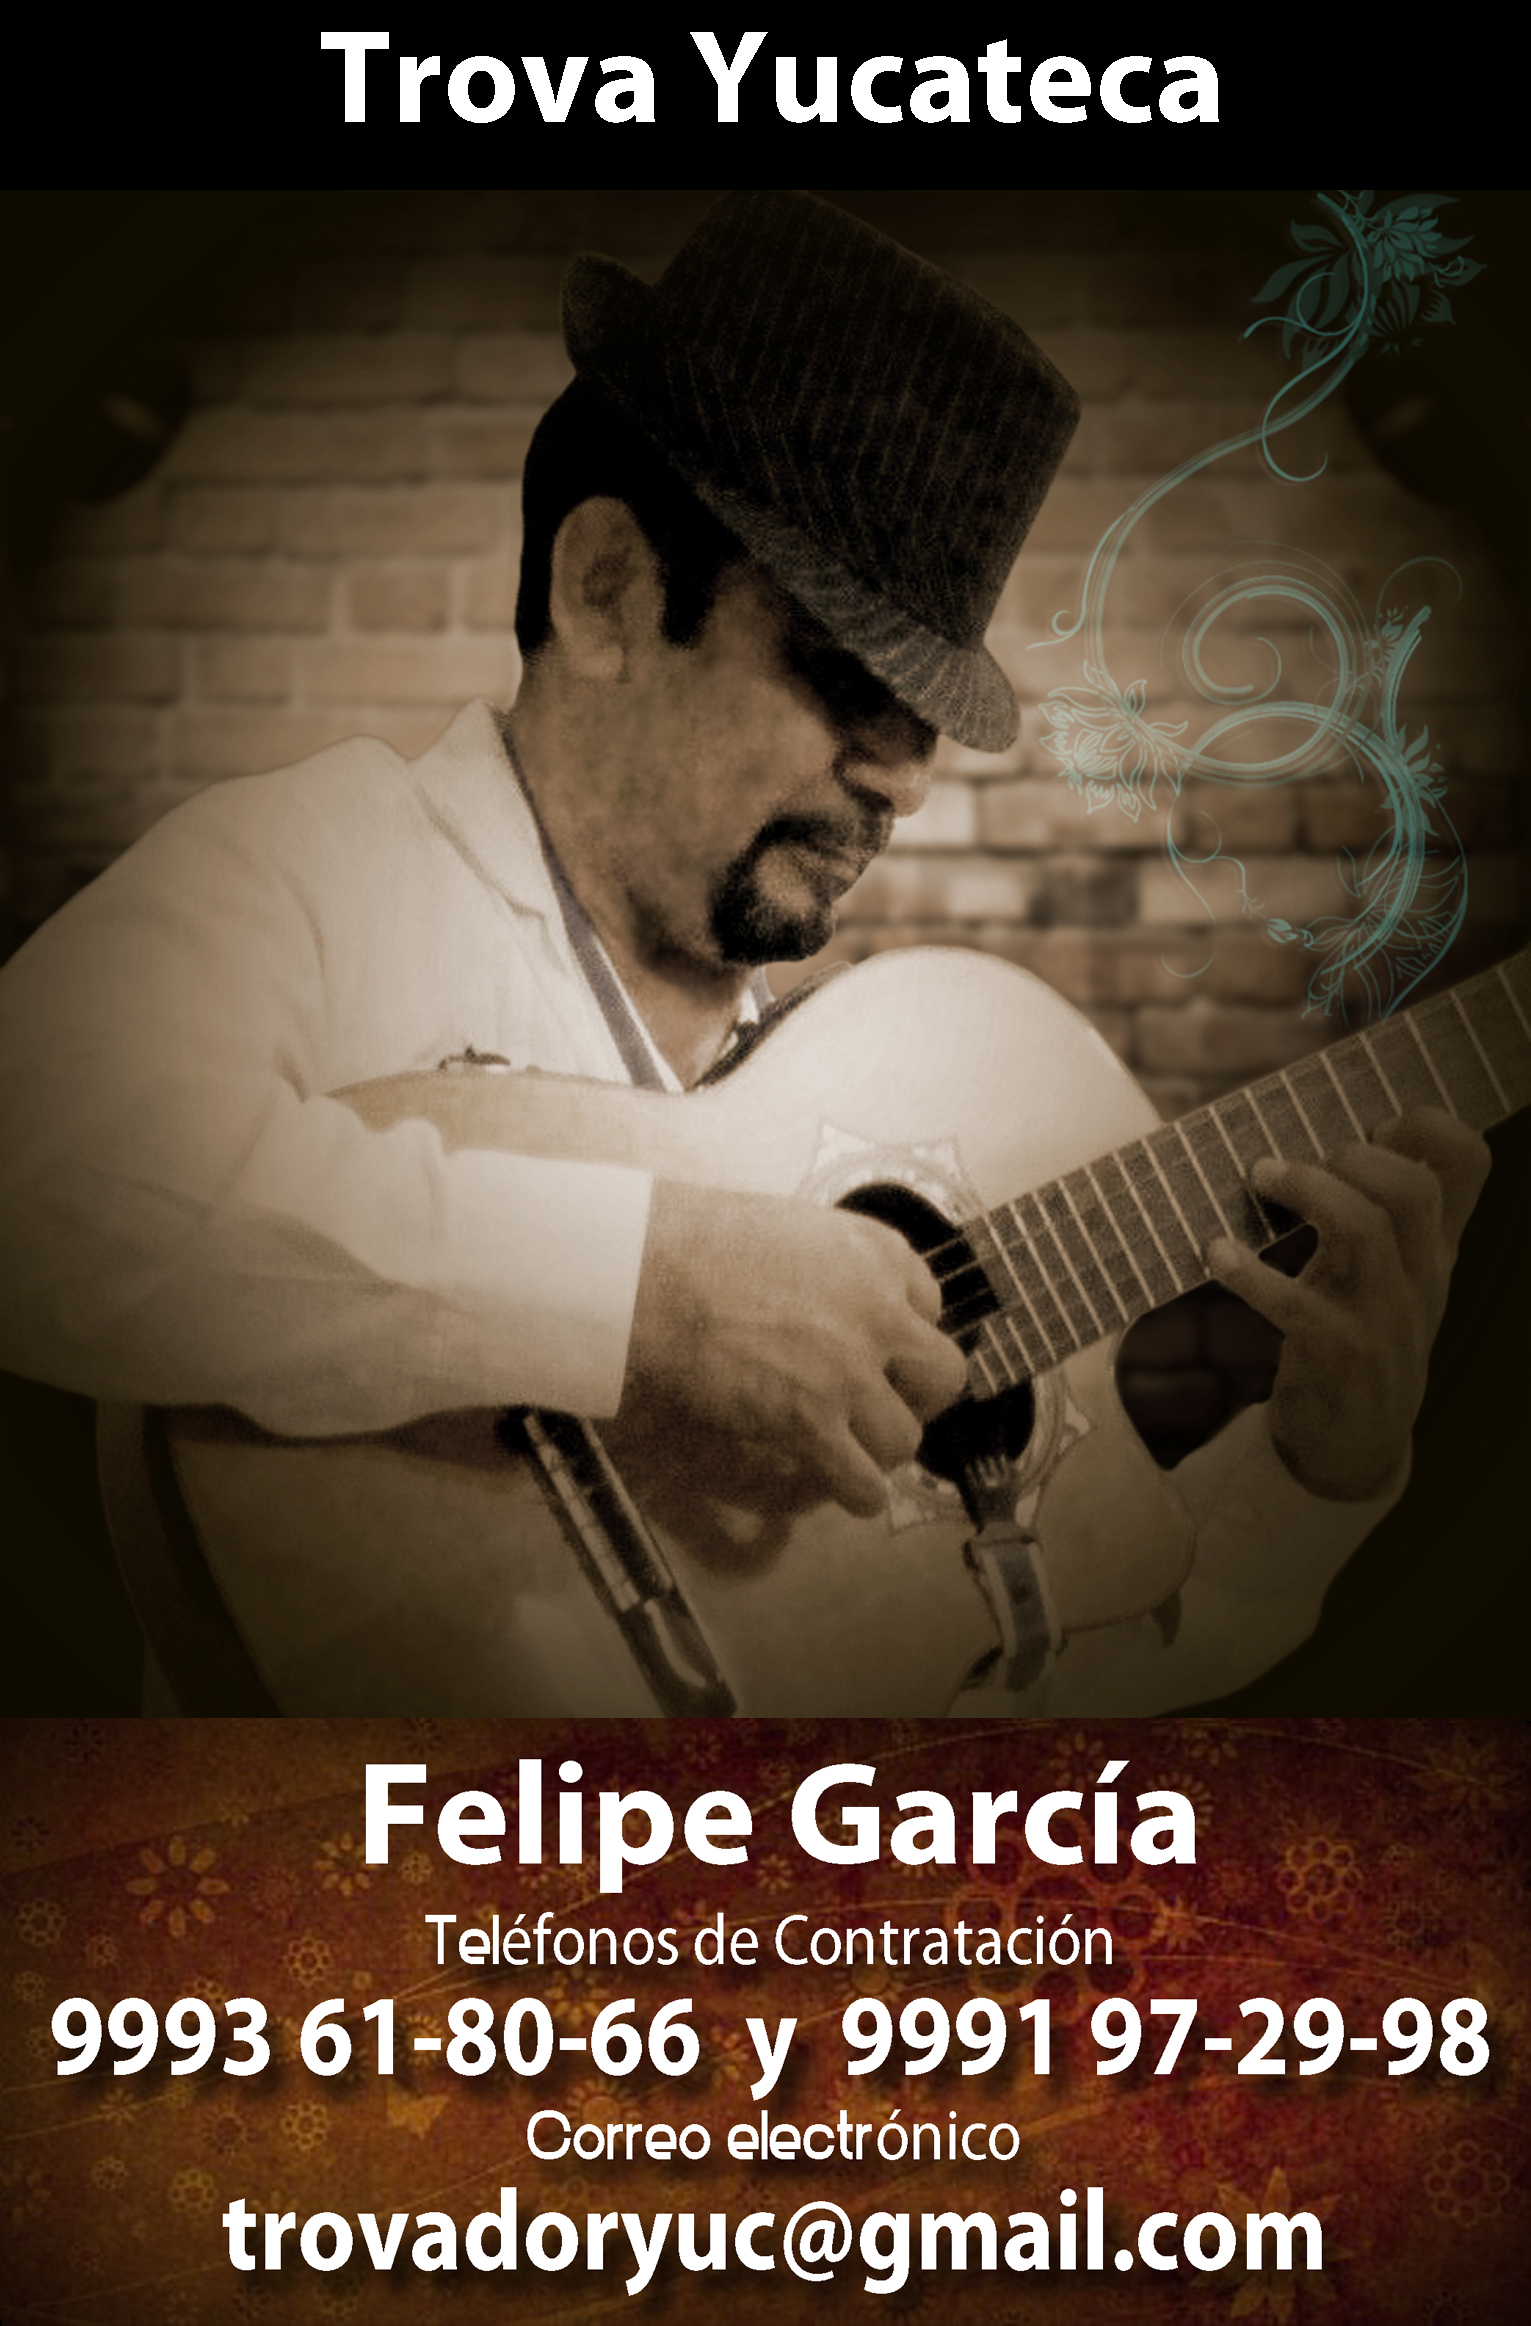 Felipe García, 99 91 97-29-98 y  99 93 61-80-66